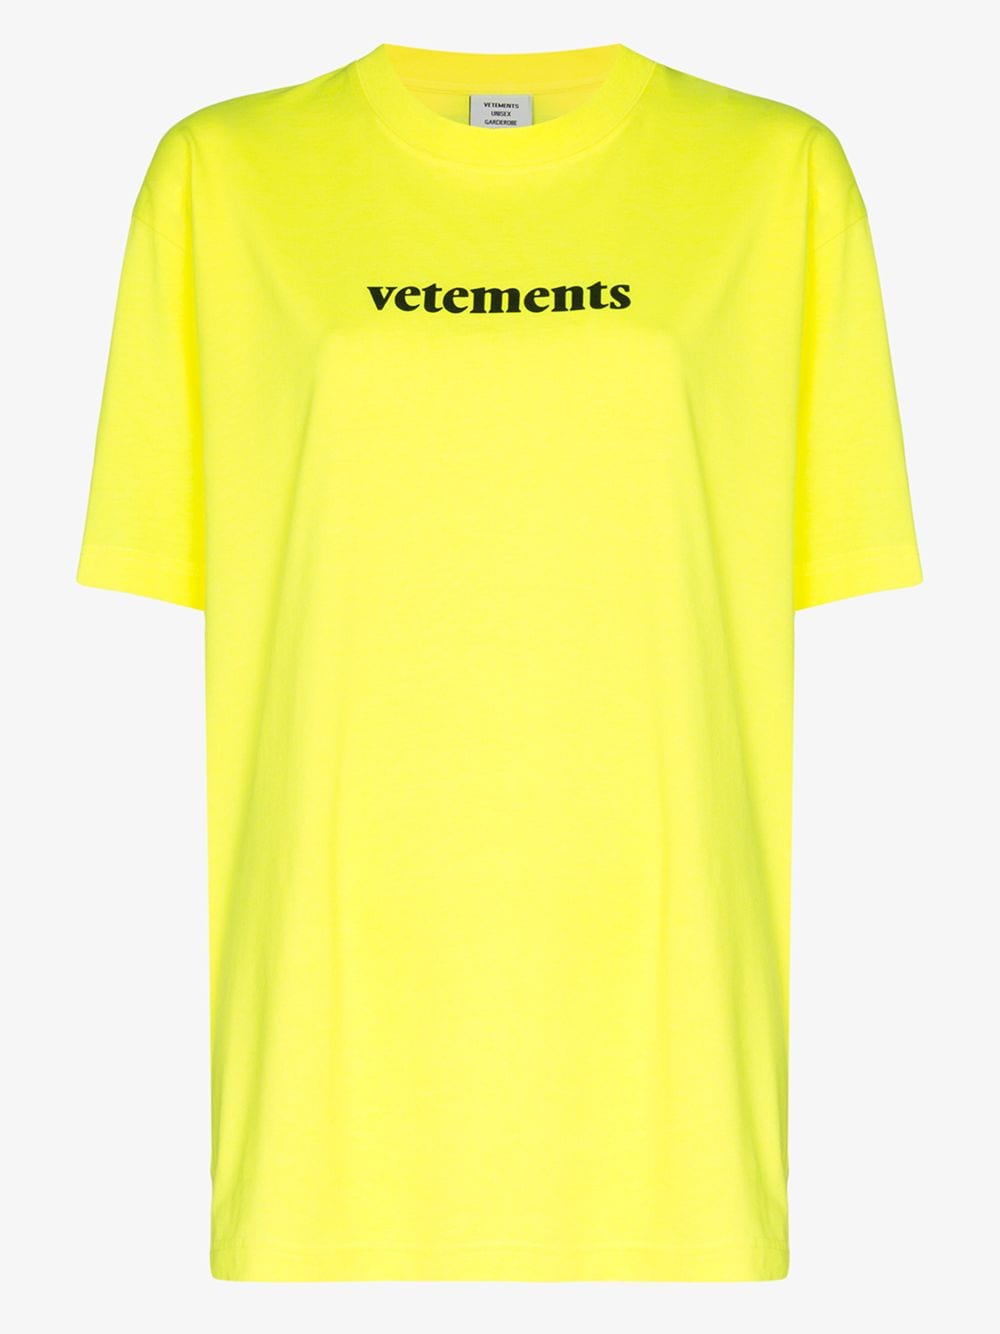 Hello vetements. Vetements футболка 2020. Vetements футболка желтая. Футболка vetements салатовая. Vetements футболка лого.